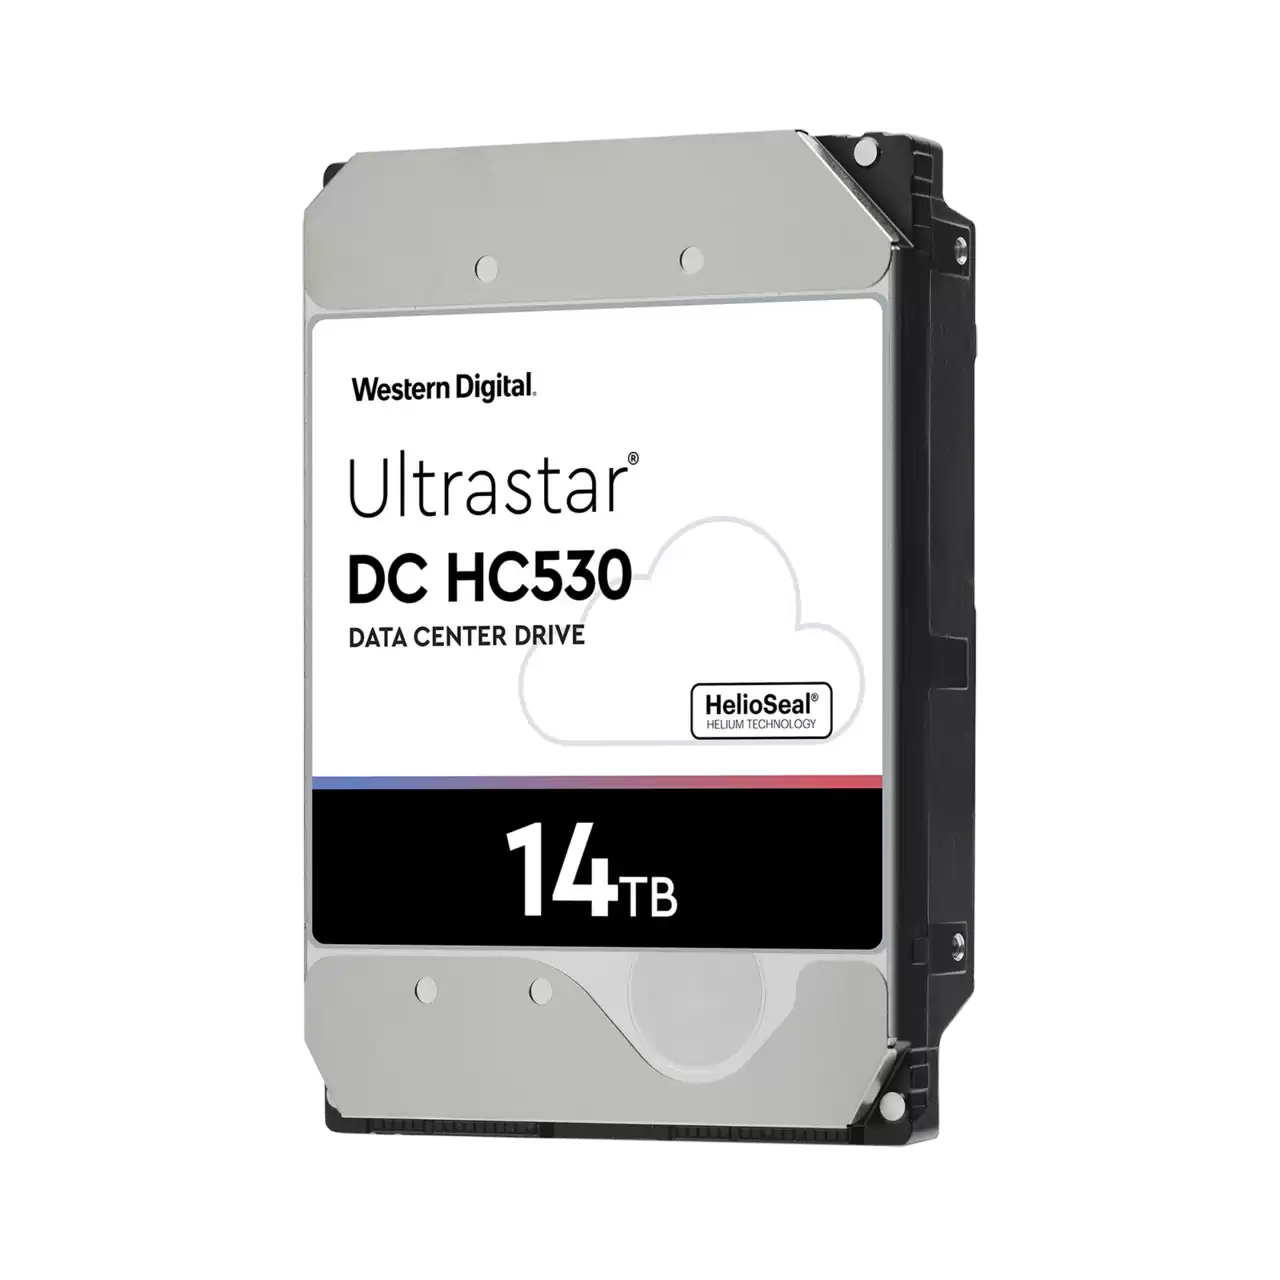 WD Ultrastar DC HC530 - 14TB - 3.5 SATA - 0F31284